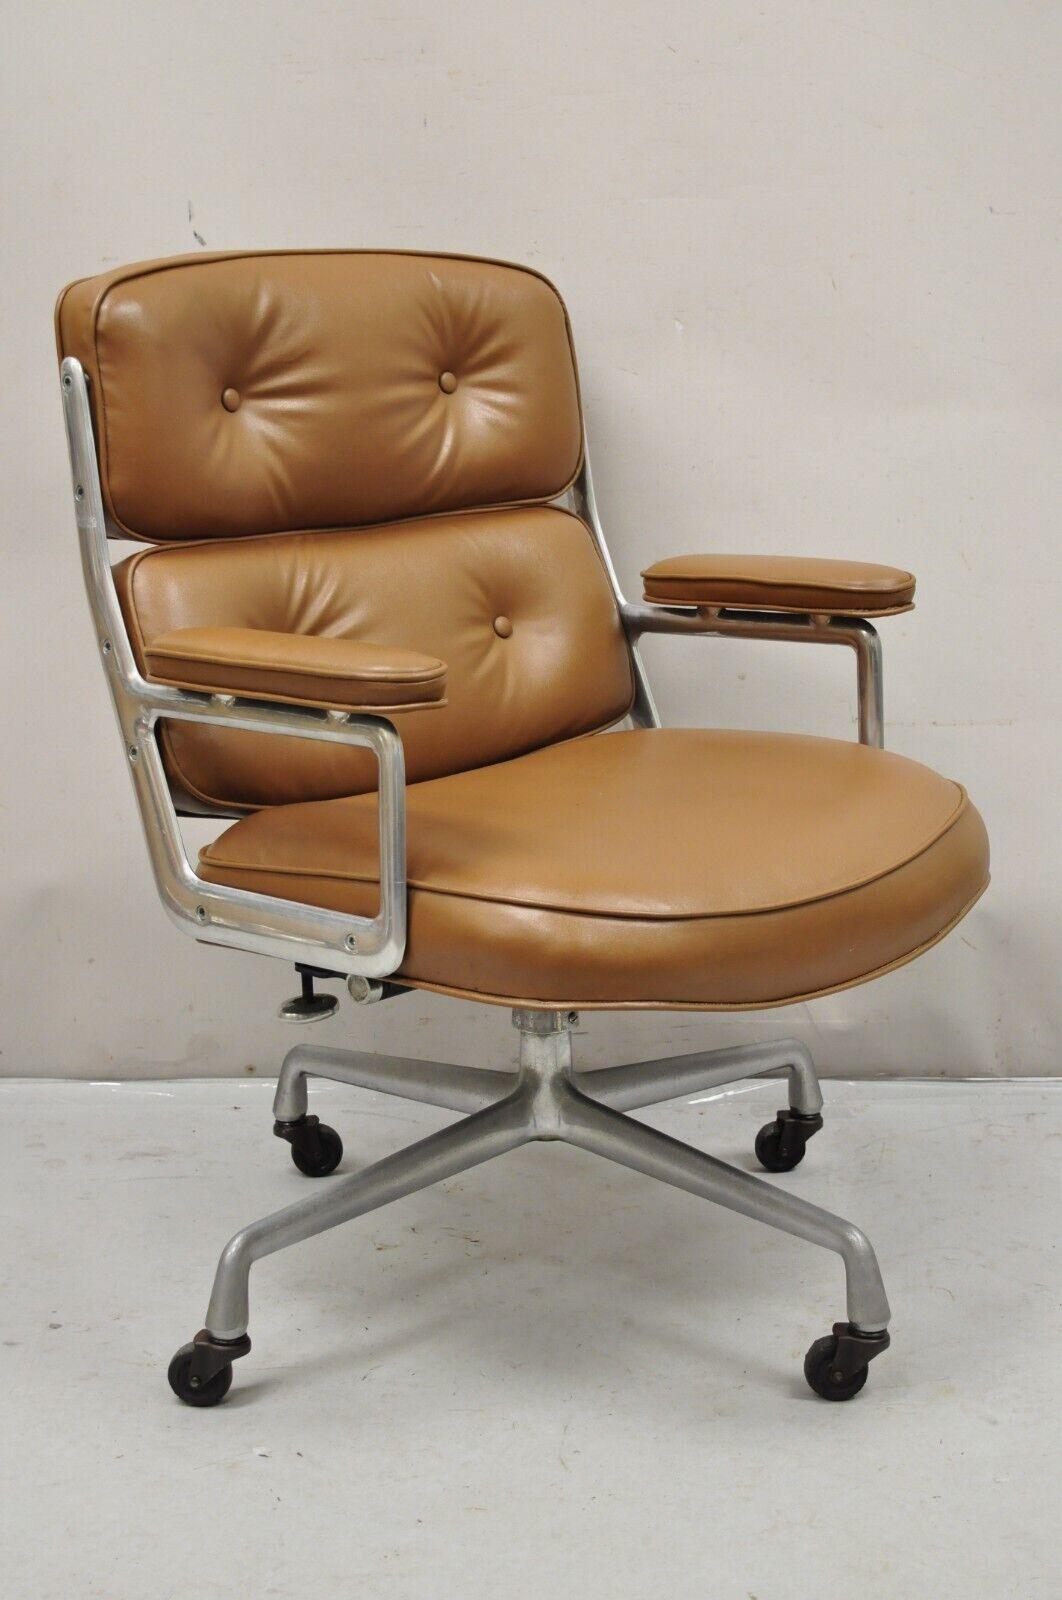 Herman Miller Eames Time Life Braun Kunstleder Rolling Office Desk Chair. Circa Aluminium-Metallrahmen, höhenverstellbar, original Label, Qualität amerikanischer Handwerkskunst, großen Stil und Form. CIRCA 960er Jahre. Abmessungen: 37